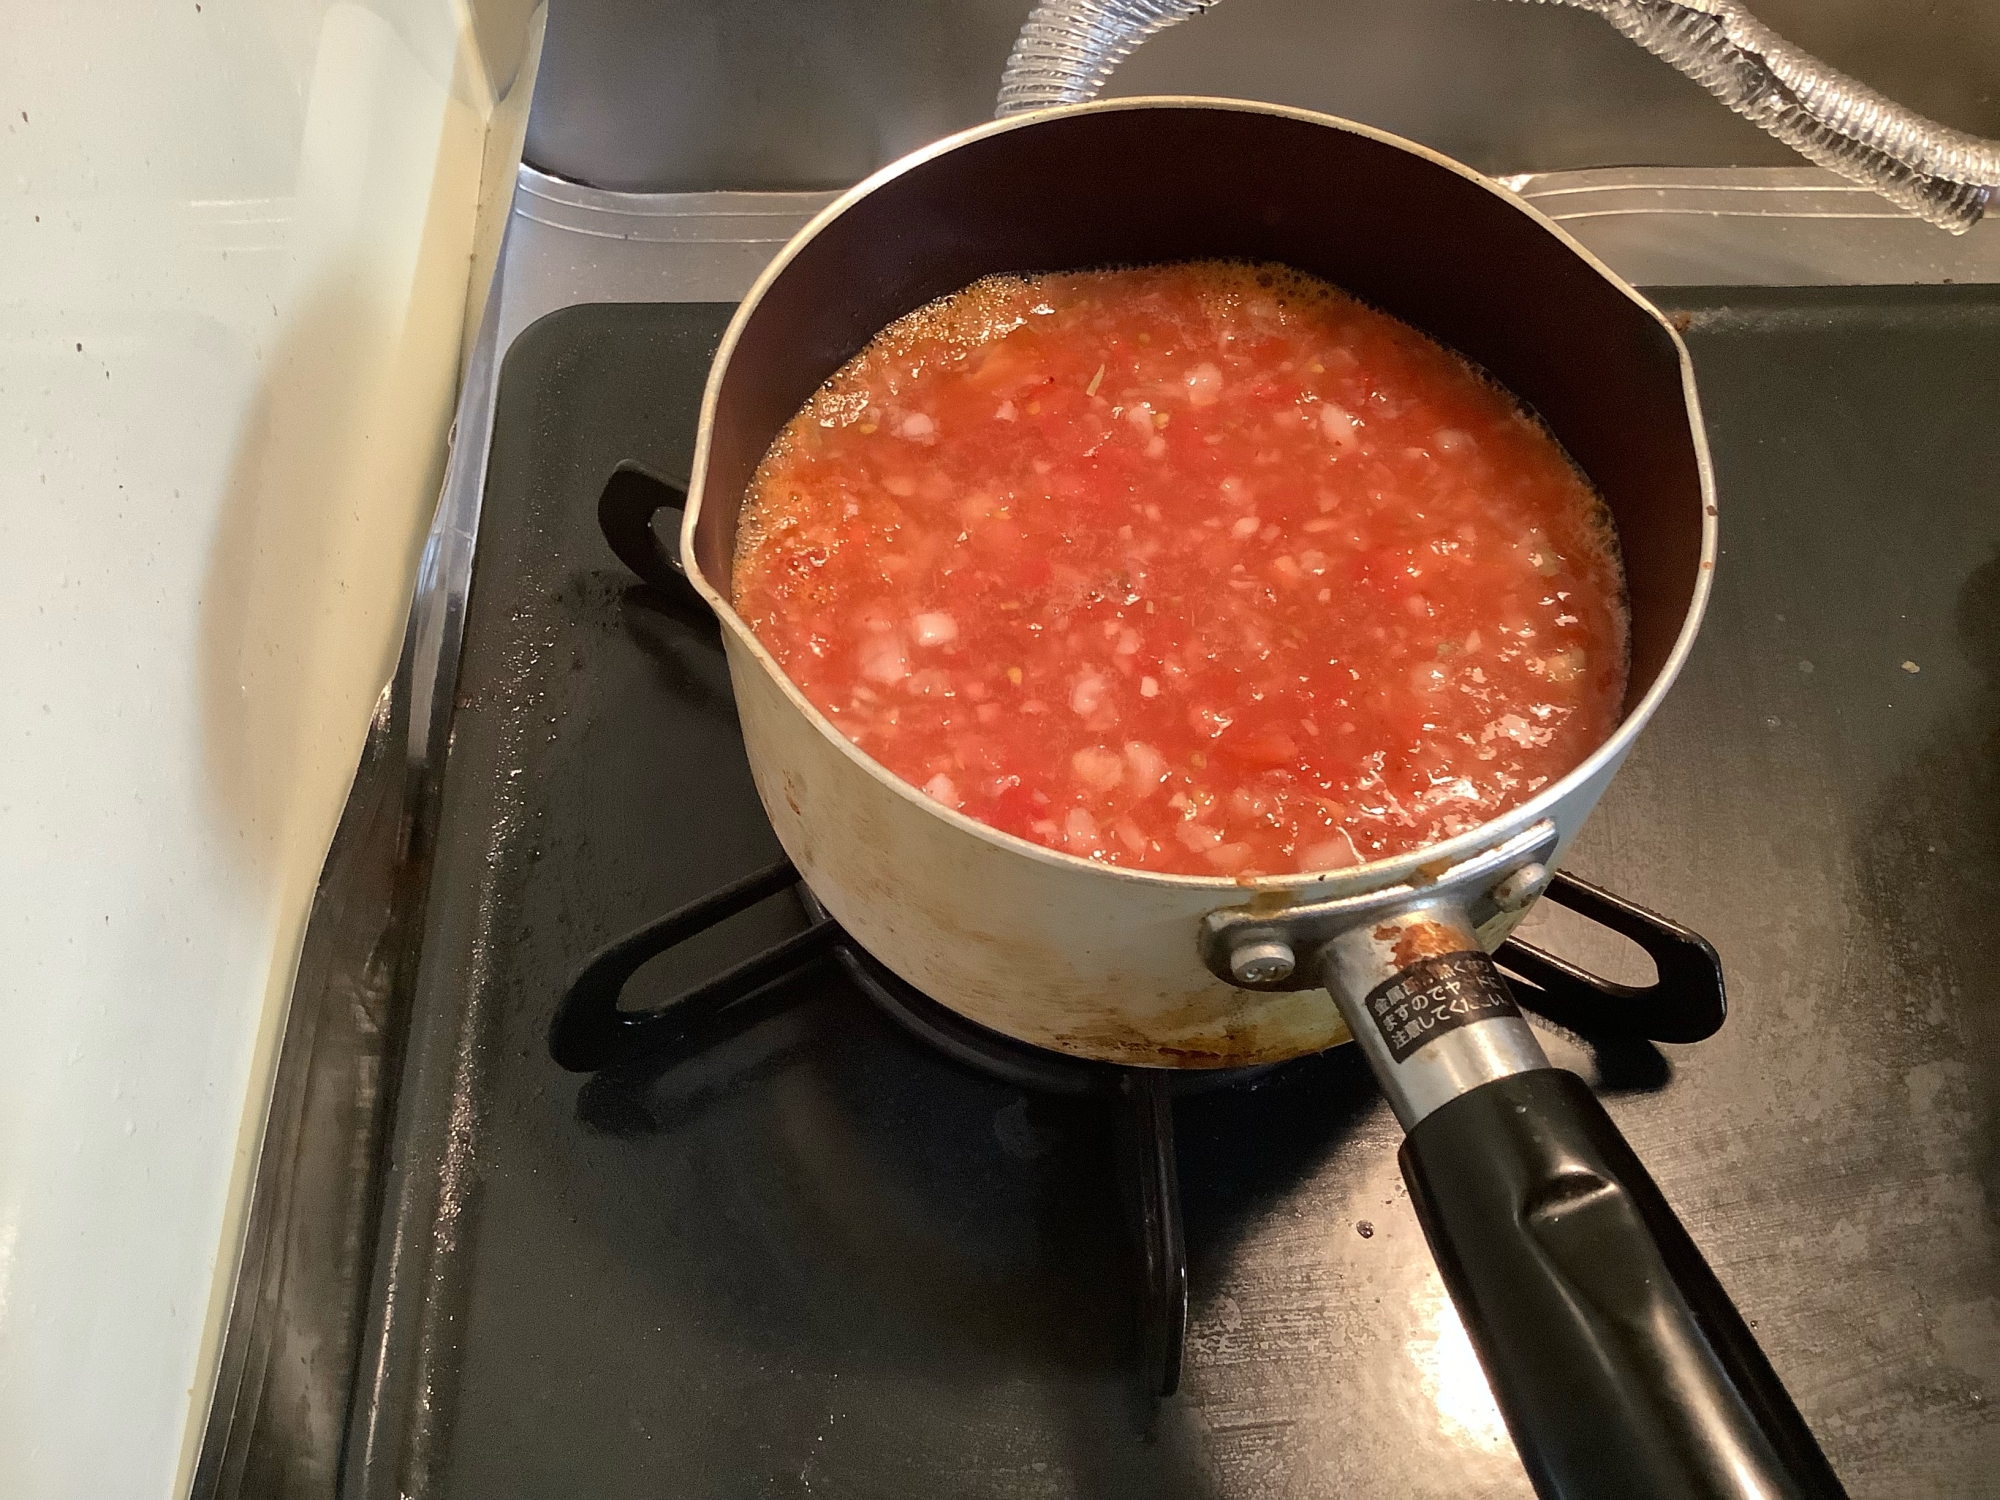 自家製トマトソース